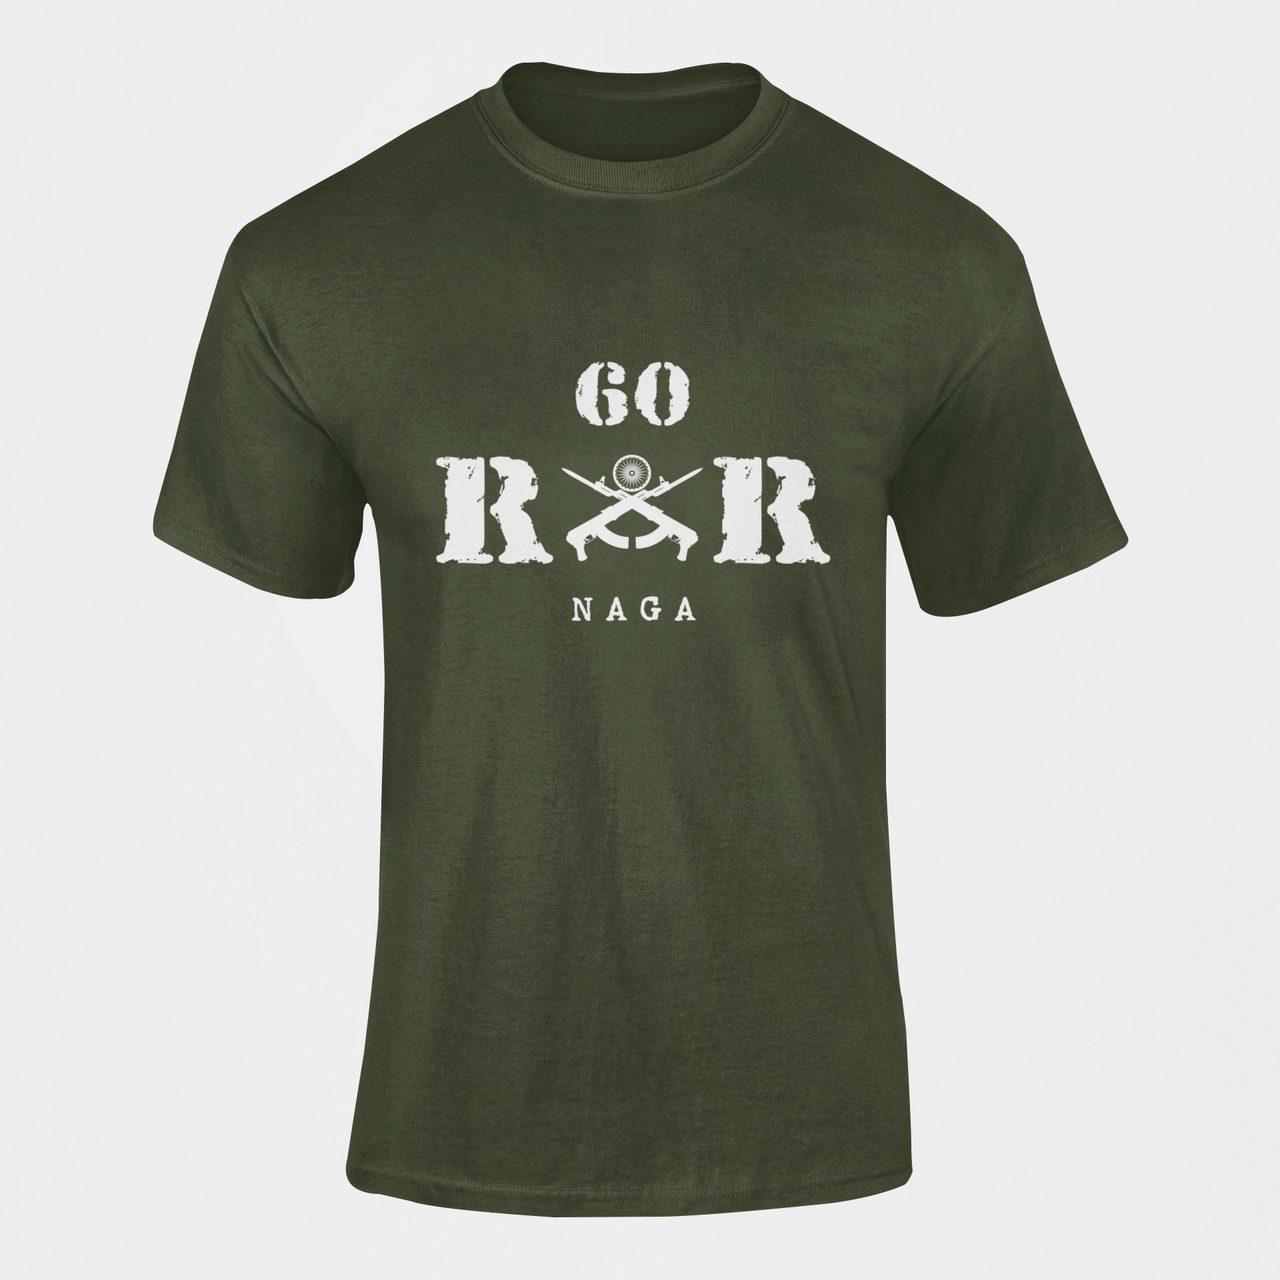 Rashtriya Rifles T-shirt - 60 RR Naga (Men)